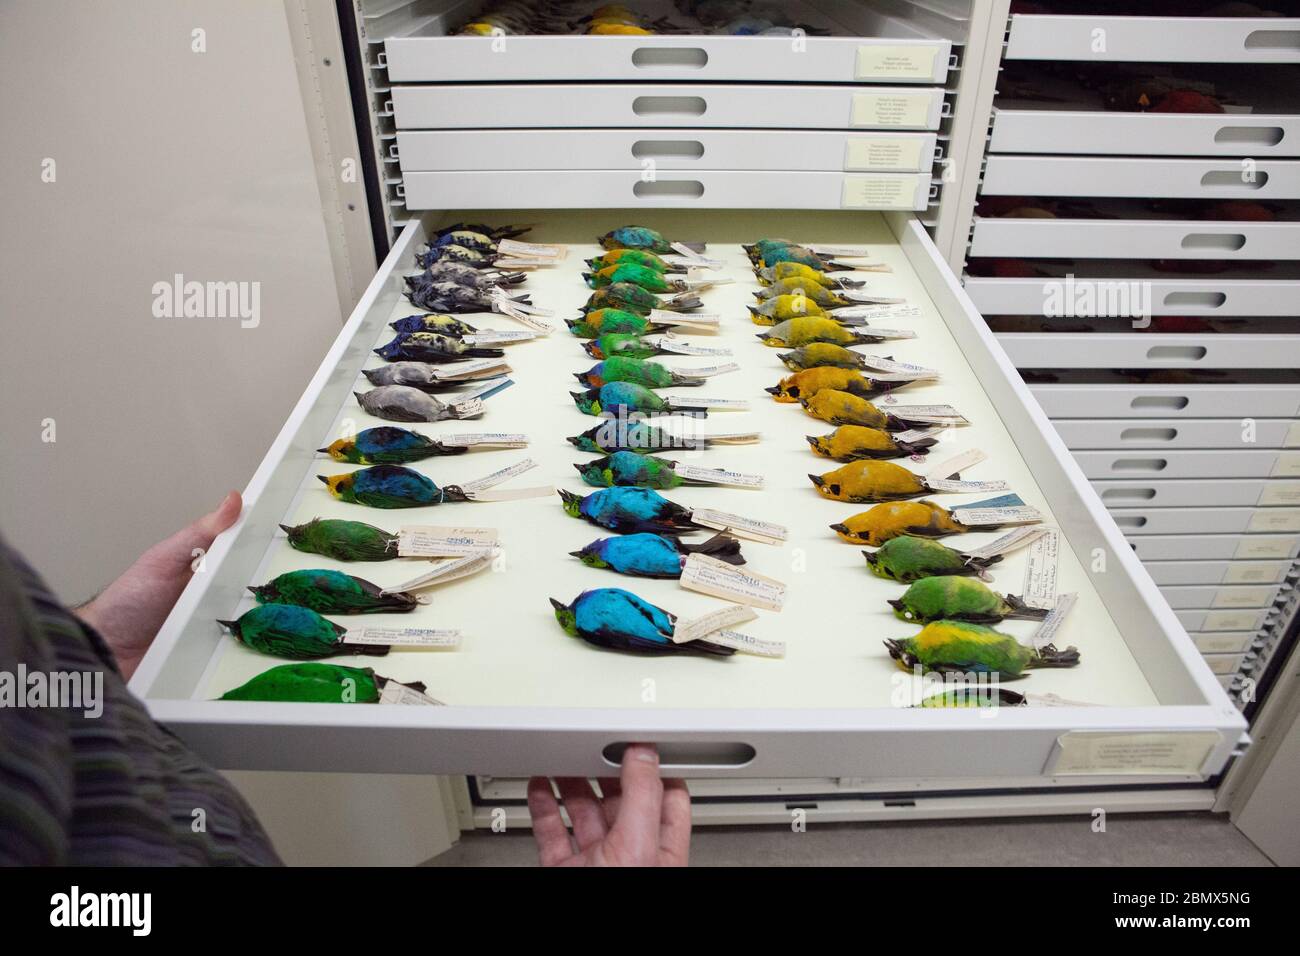 Un cajón lleno de aves tanager conservadas (Thraupidae) recolectadas en diferentes lugares alrededor del mundo en el Laboratorio Cornell de Ornitología, Ithaca, NY Foto de stock